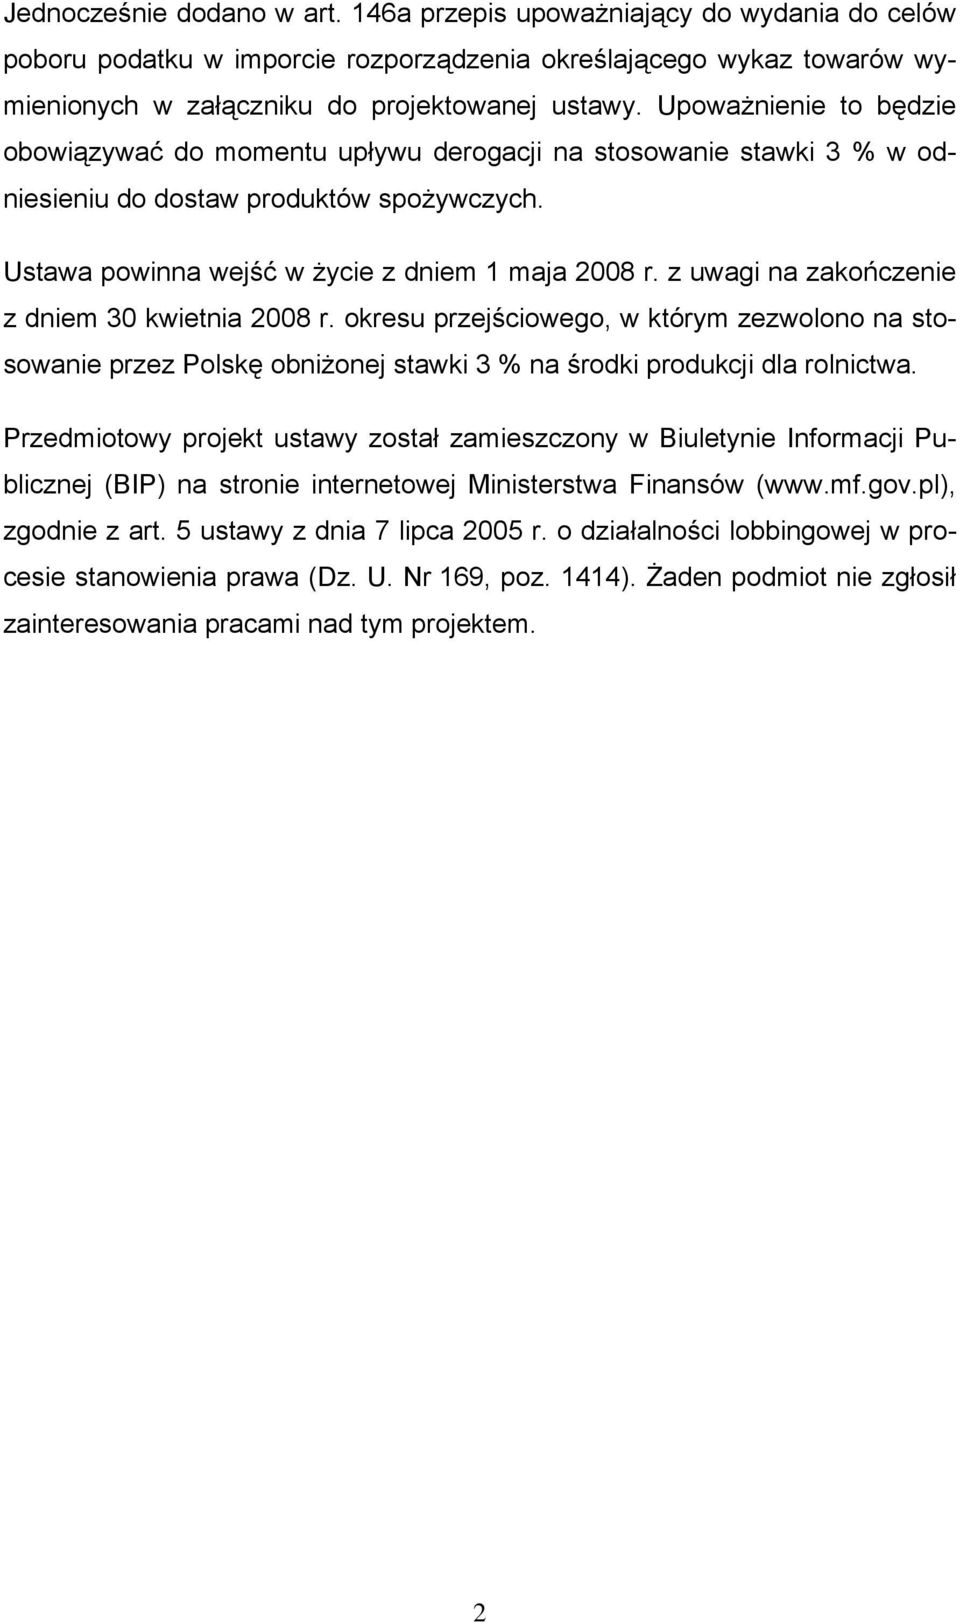 z uwagi na zakończenie z dniem 30 kwietnia 2008 r. okresu przejściowego, w którym zezwolono na stosowanie przez Polskę obniżonej stawki 3 % na środki produkcji dla rolnictwa.